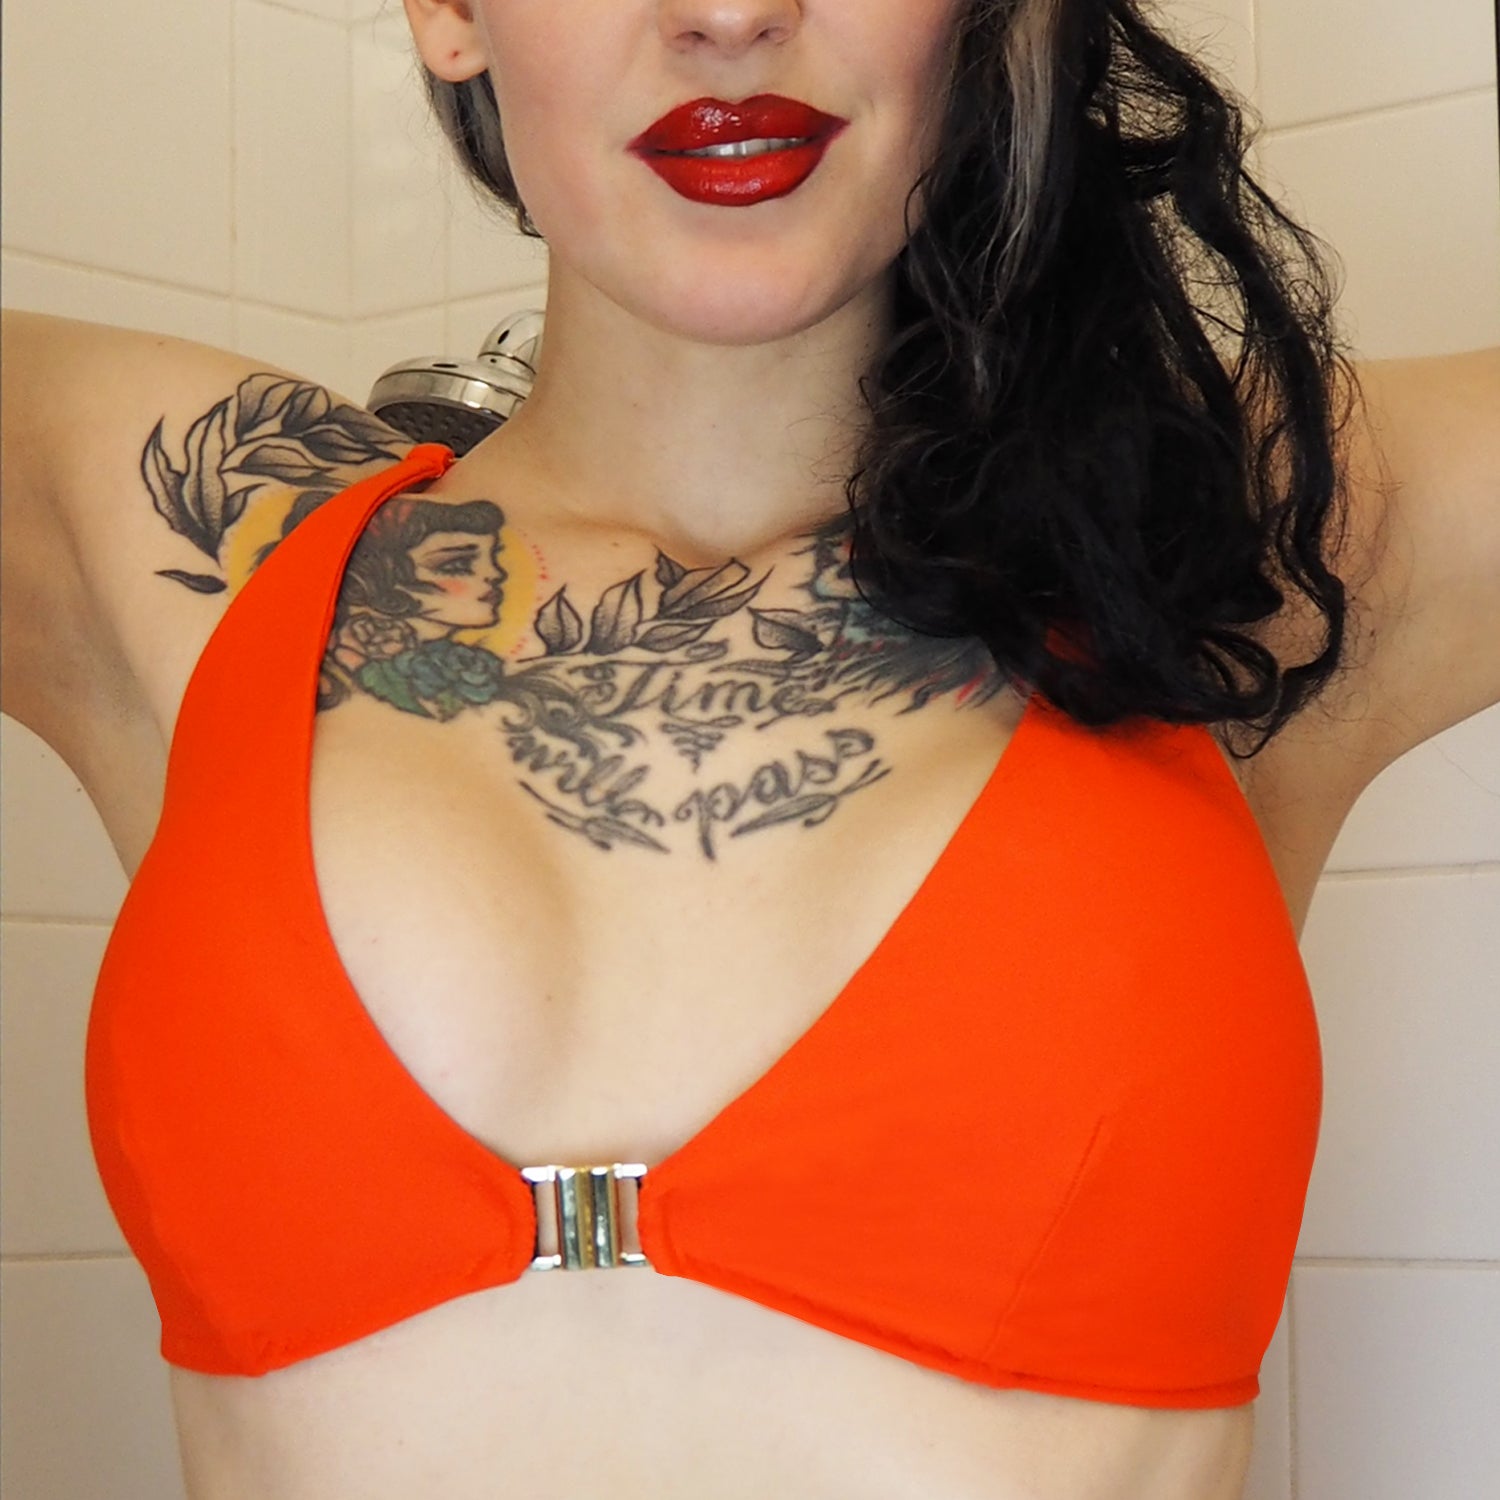 Itsy Bitsy Bikini Triangle Bralette mandarino